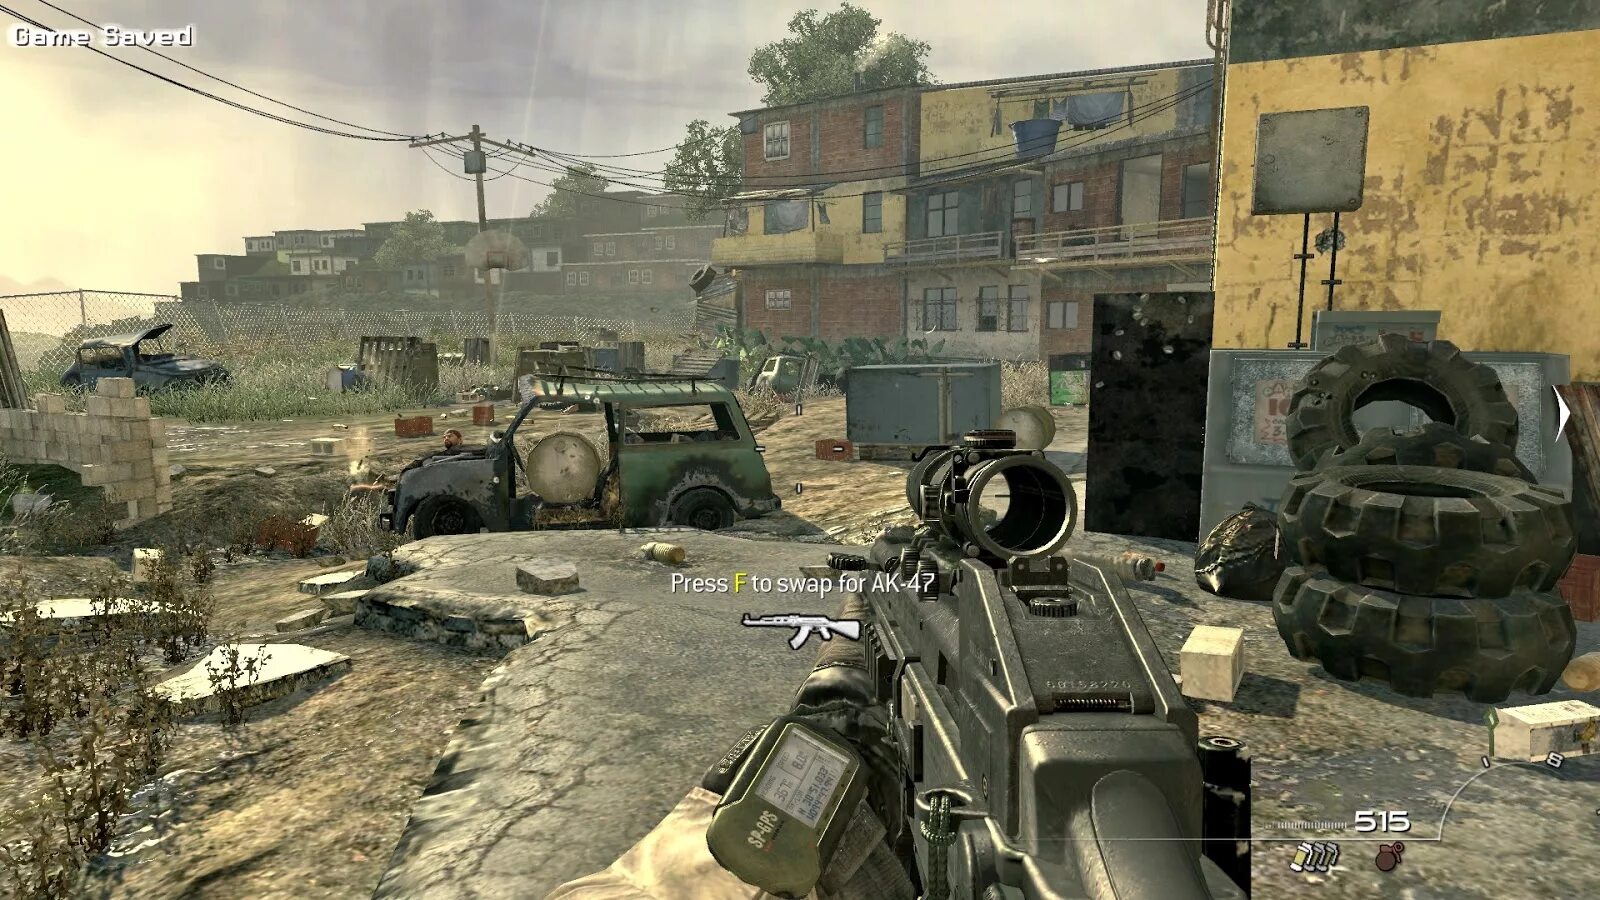 Modern Warfare 2. Call of Duty 4 Modern Warfare 2. Cod 2 Modern Warfare 2. Call of Duty mw2.